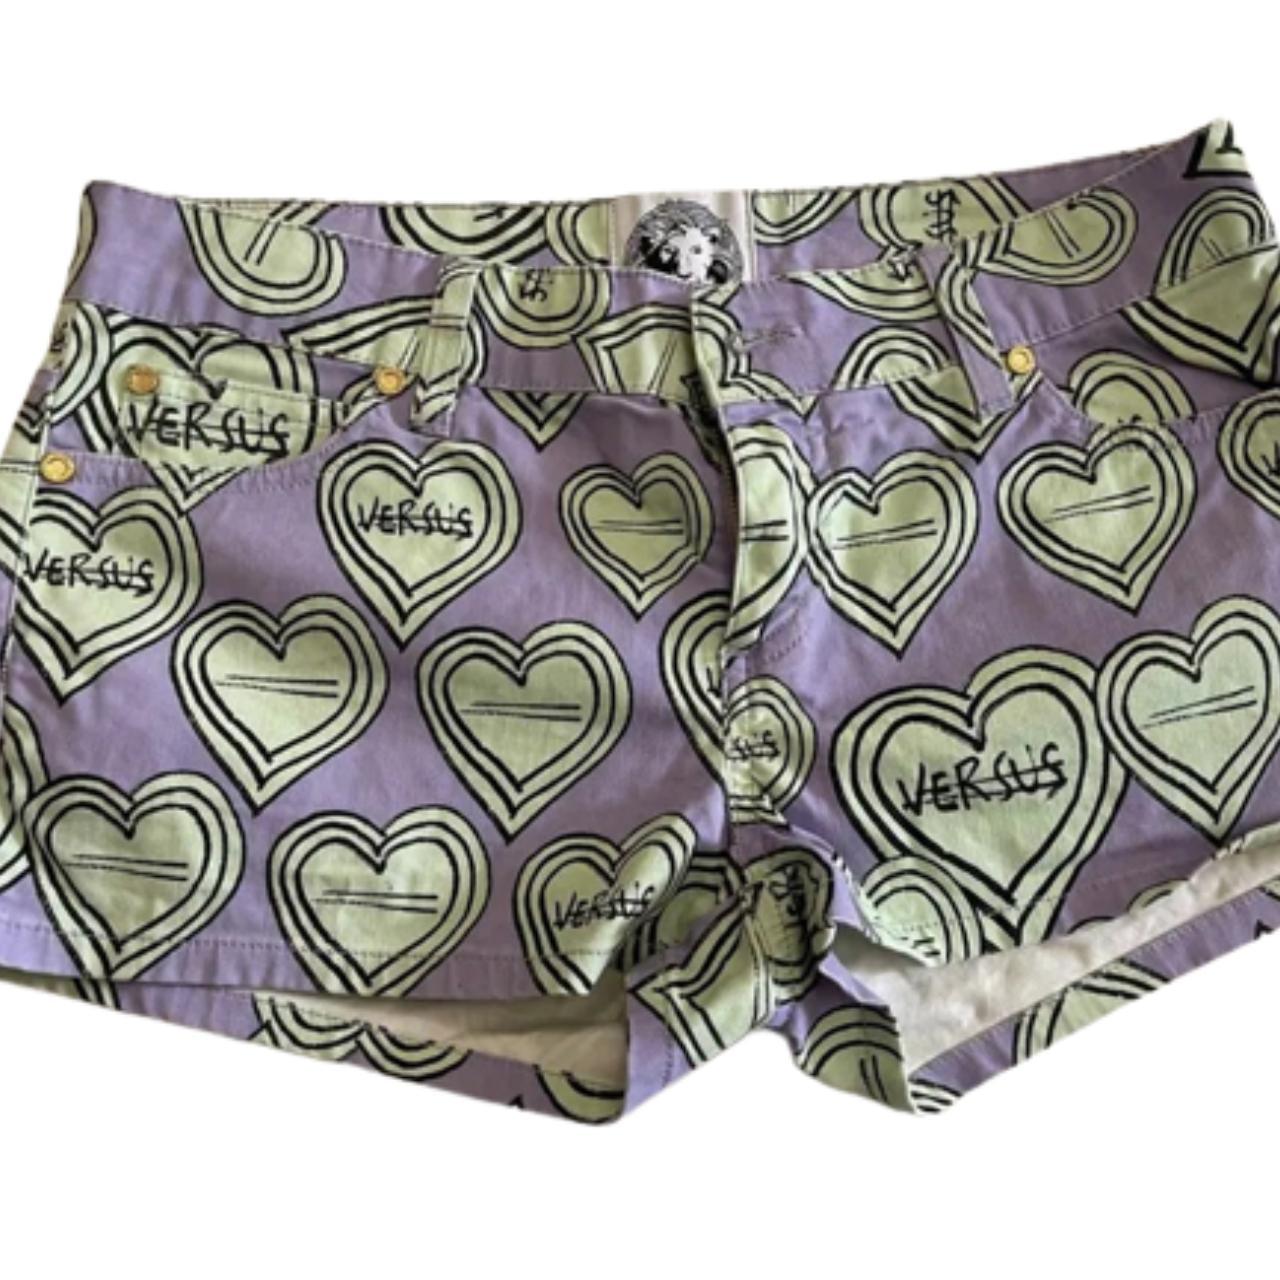 Product Image 2 - Vintage lilac Versus shorts
sz XS
it